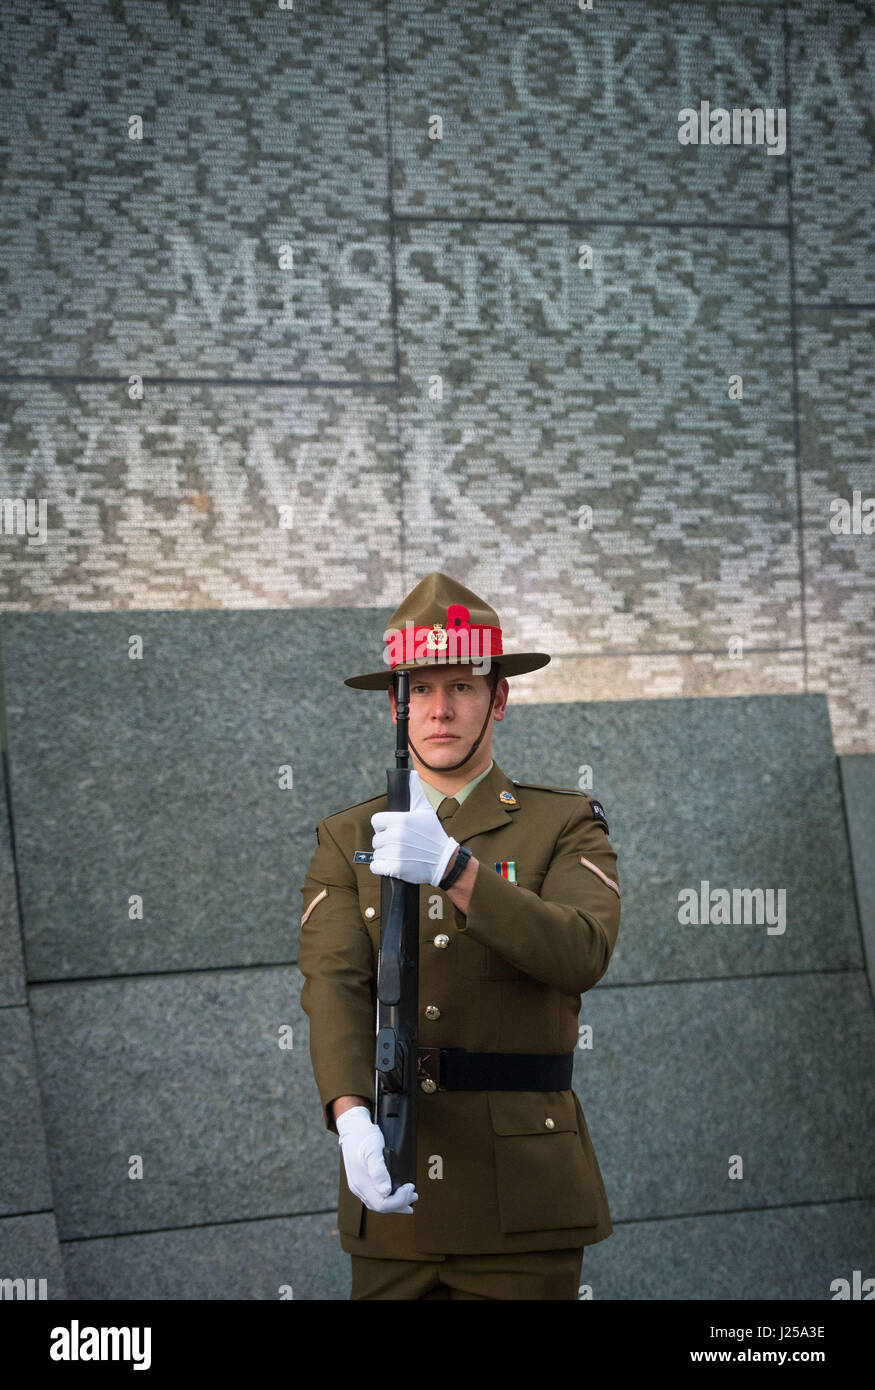 Un soldat néo-zélandais au cours d'un service de l'aube de l'Anzac Day à l'Australian War Memorial à Hyde Park Corner à Londres, marquant l'anniversaire de la première grande action militaire menée par les forces de l'Australie et de la Nouvelle-Zélande au cours de la Première Guerre mondiale. Banque D'Images